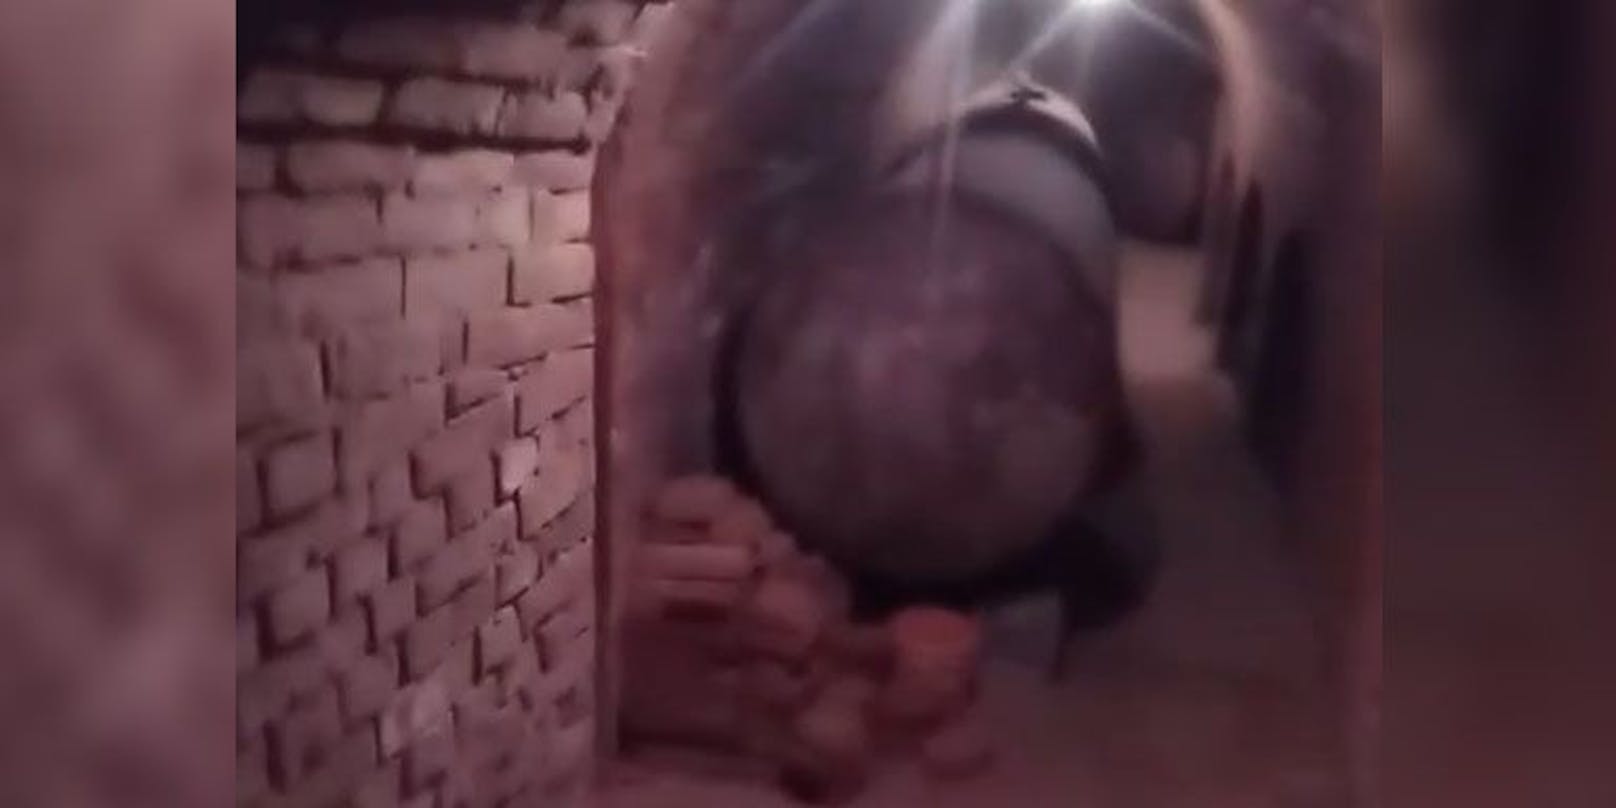 Tom L. zeigt in einem Video, wie es bei ihm im Keller aussieht.